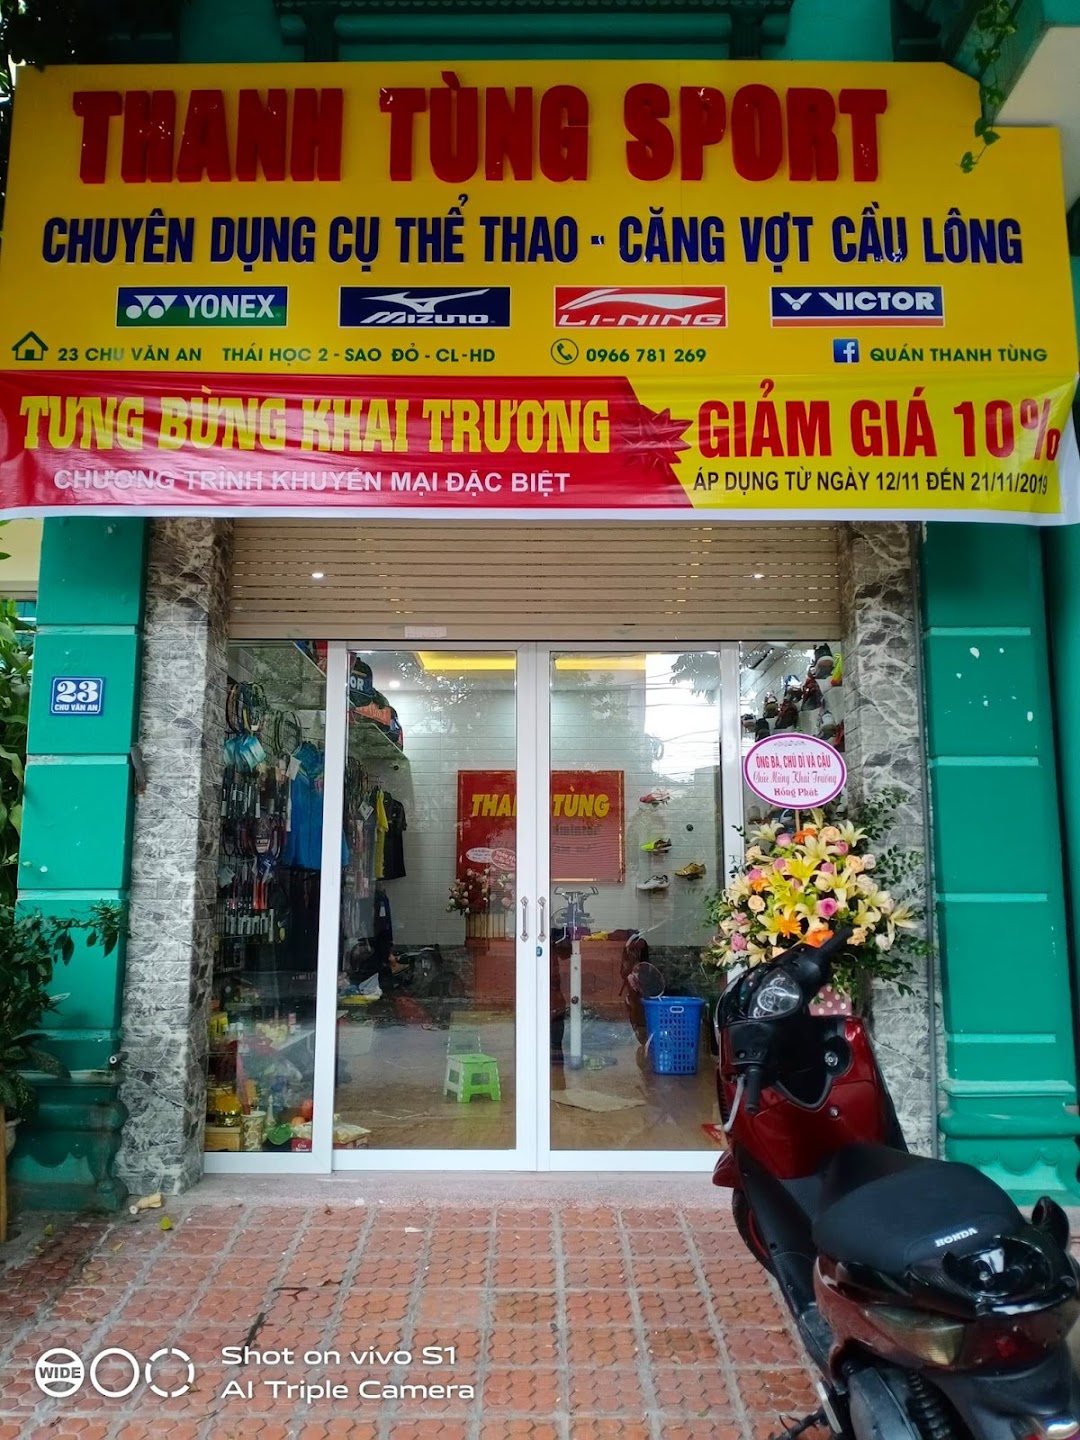 Thanh Tùng Sport